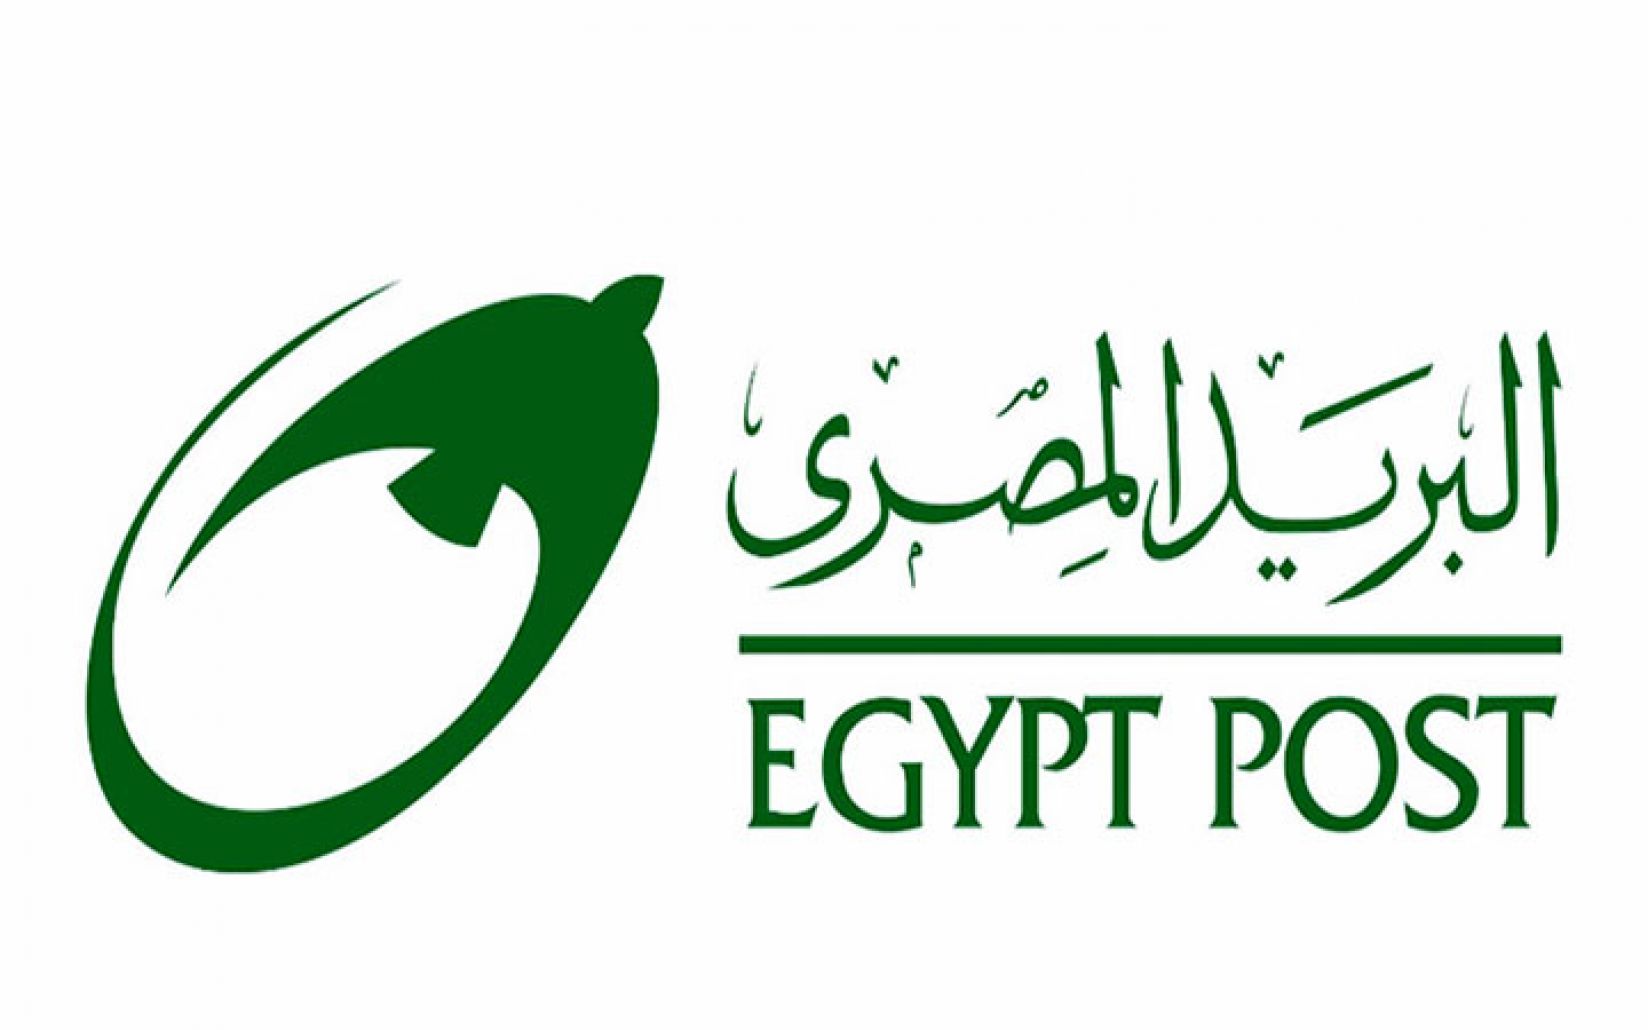 تعلن هيئة البريد المصري عن حاجتها الى موظفين للعمل بالقاهره 